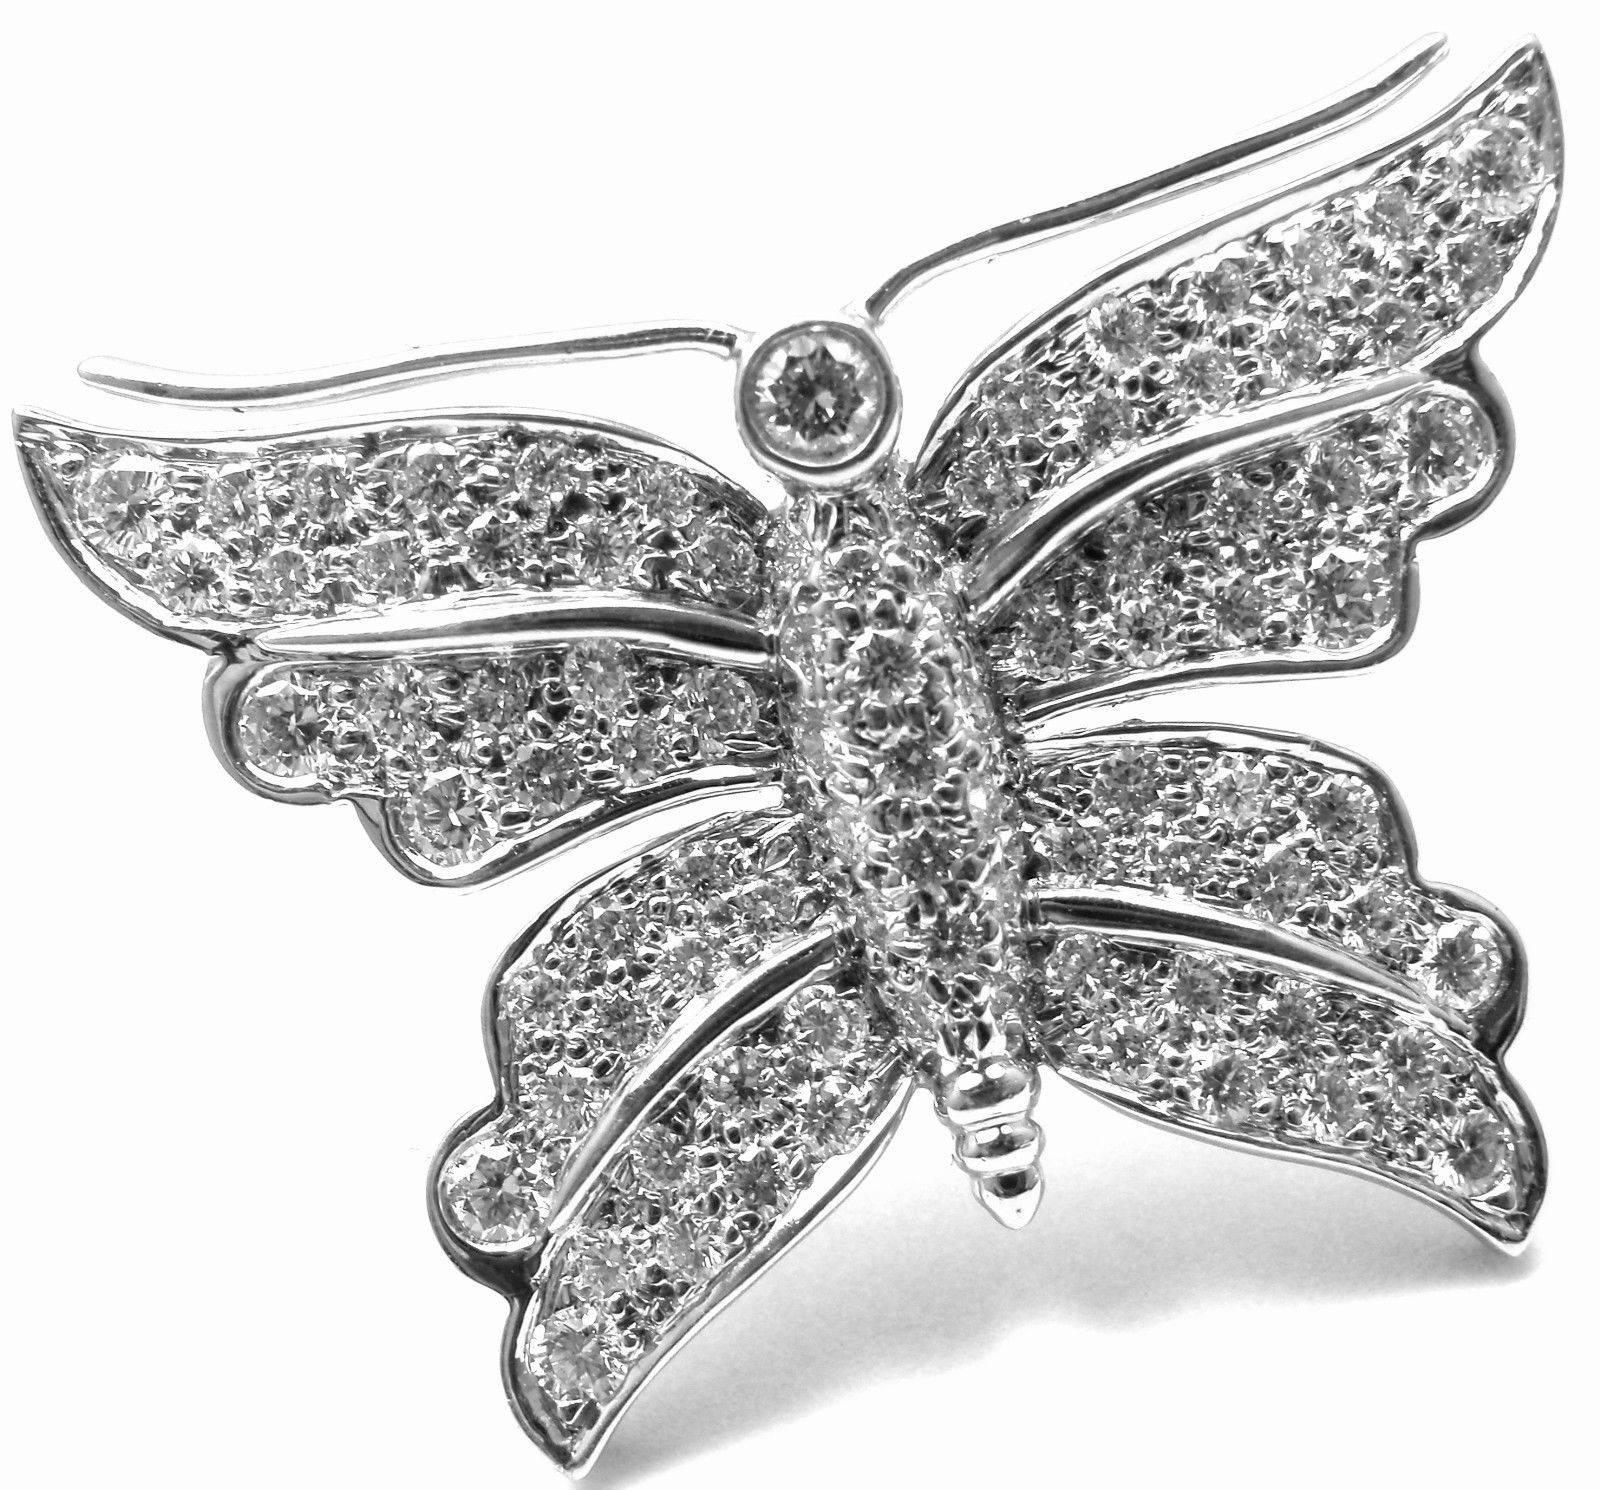 Platin-Diamant-Schmetterling-Brosche von Tiffany & Co. 
Mit runden Diamanten im Brillantschliff, Reinheit VS1, Farbe G, Gesamtgewicht ca. 1,25 ct

Einzelheiten:
Abmessungen: 1